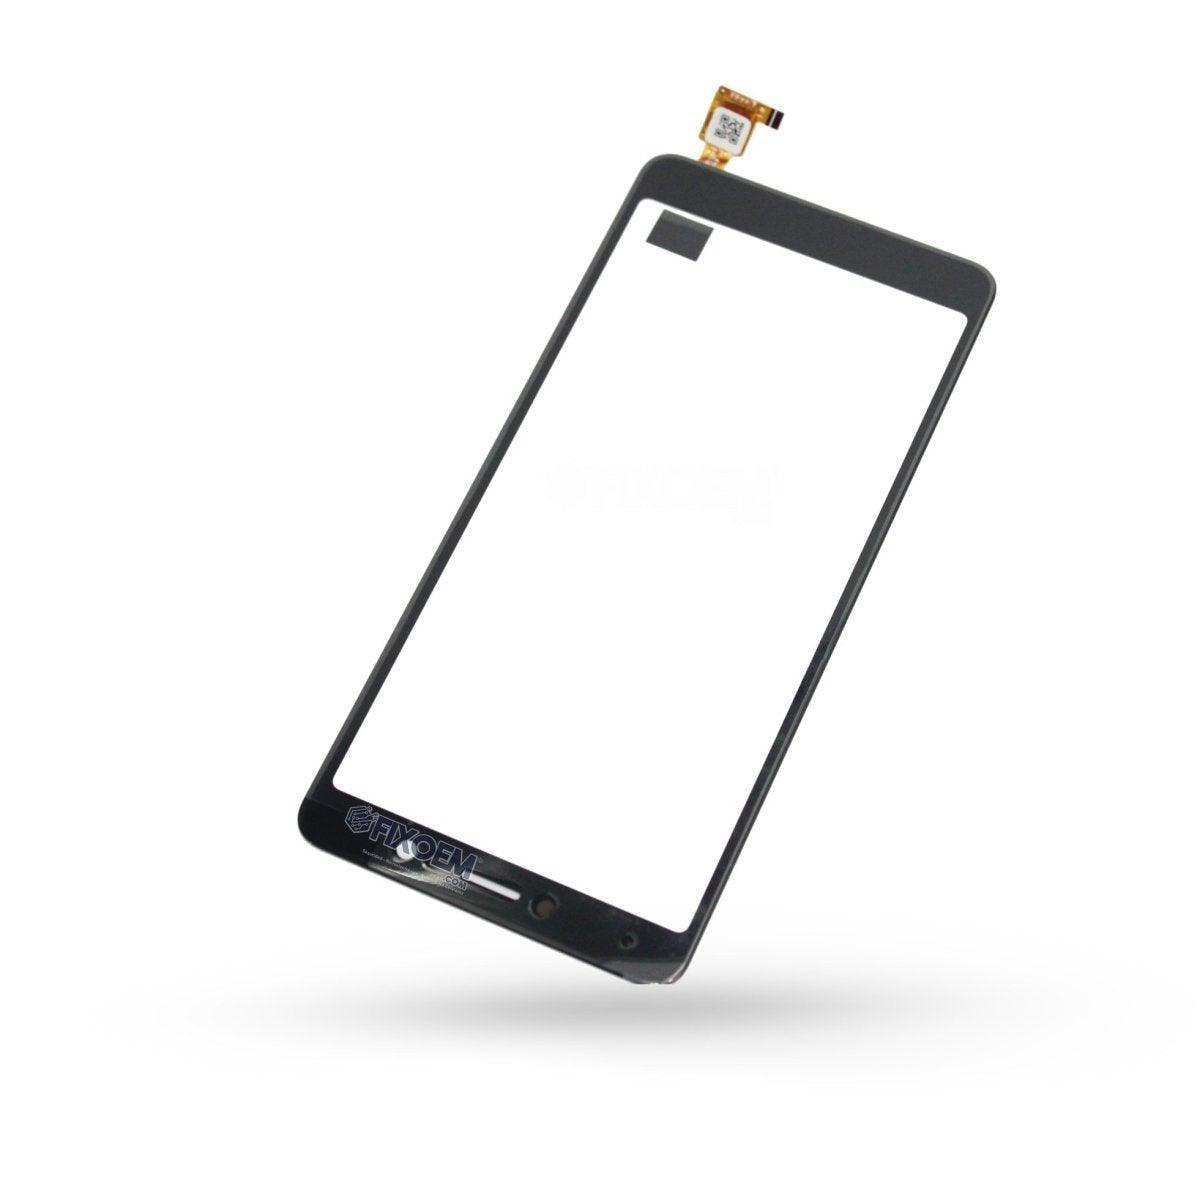 Touch Lanix M5 a solo $ 110.00 Refaccion y puestos celulares, refurbish y microelectronica.- FixOEM